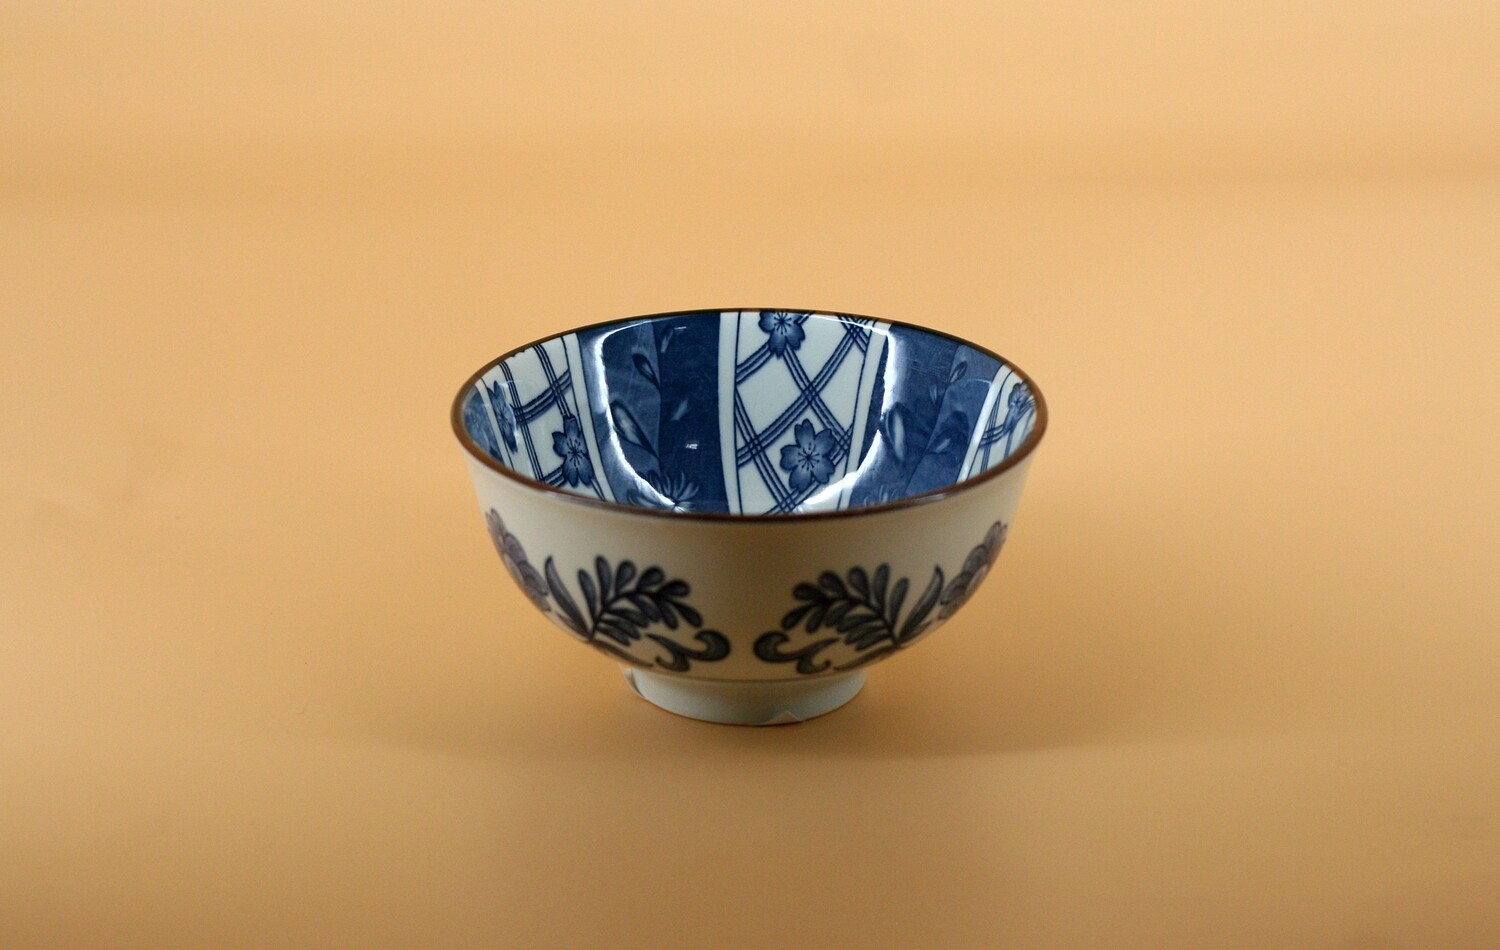 Japanese Style Stoneware Bowl - 4.75